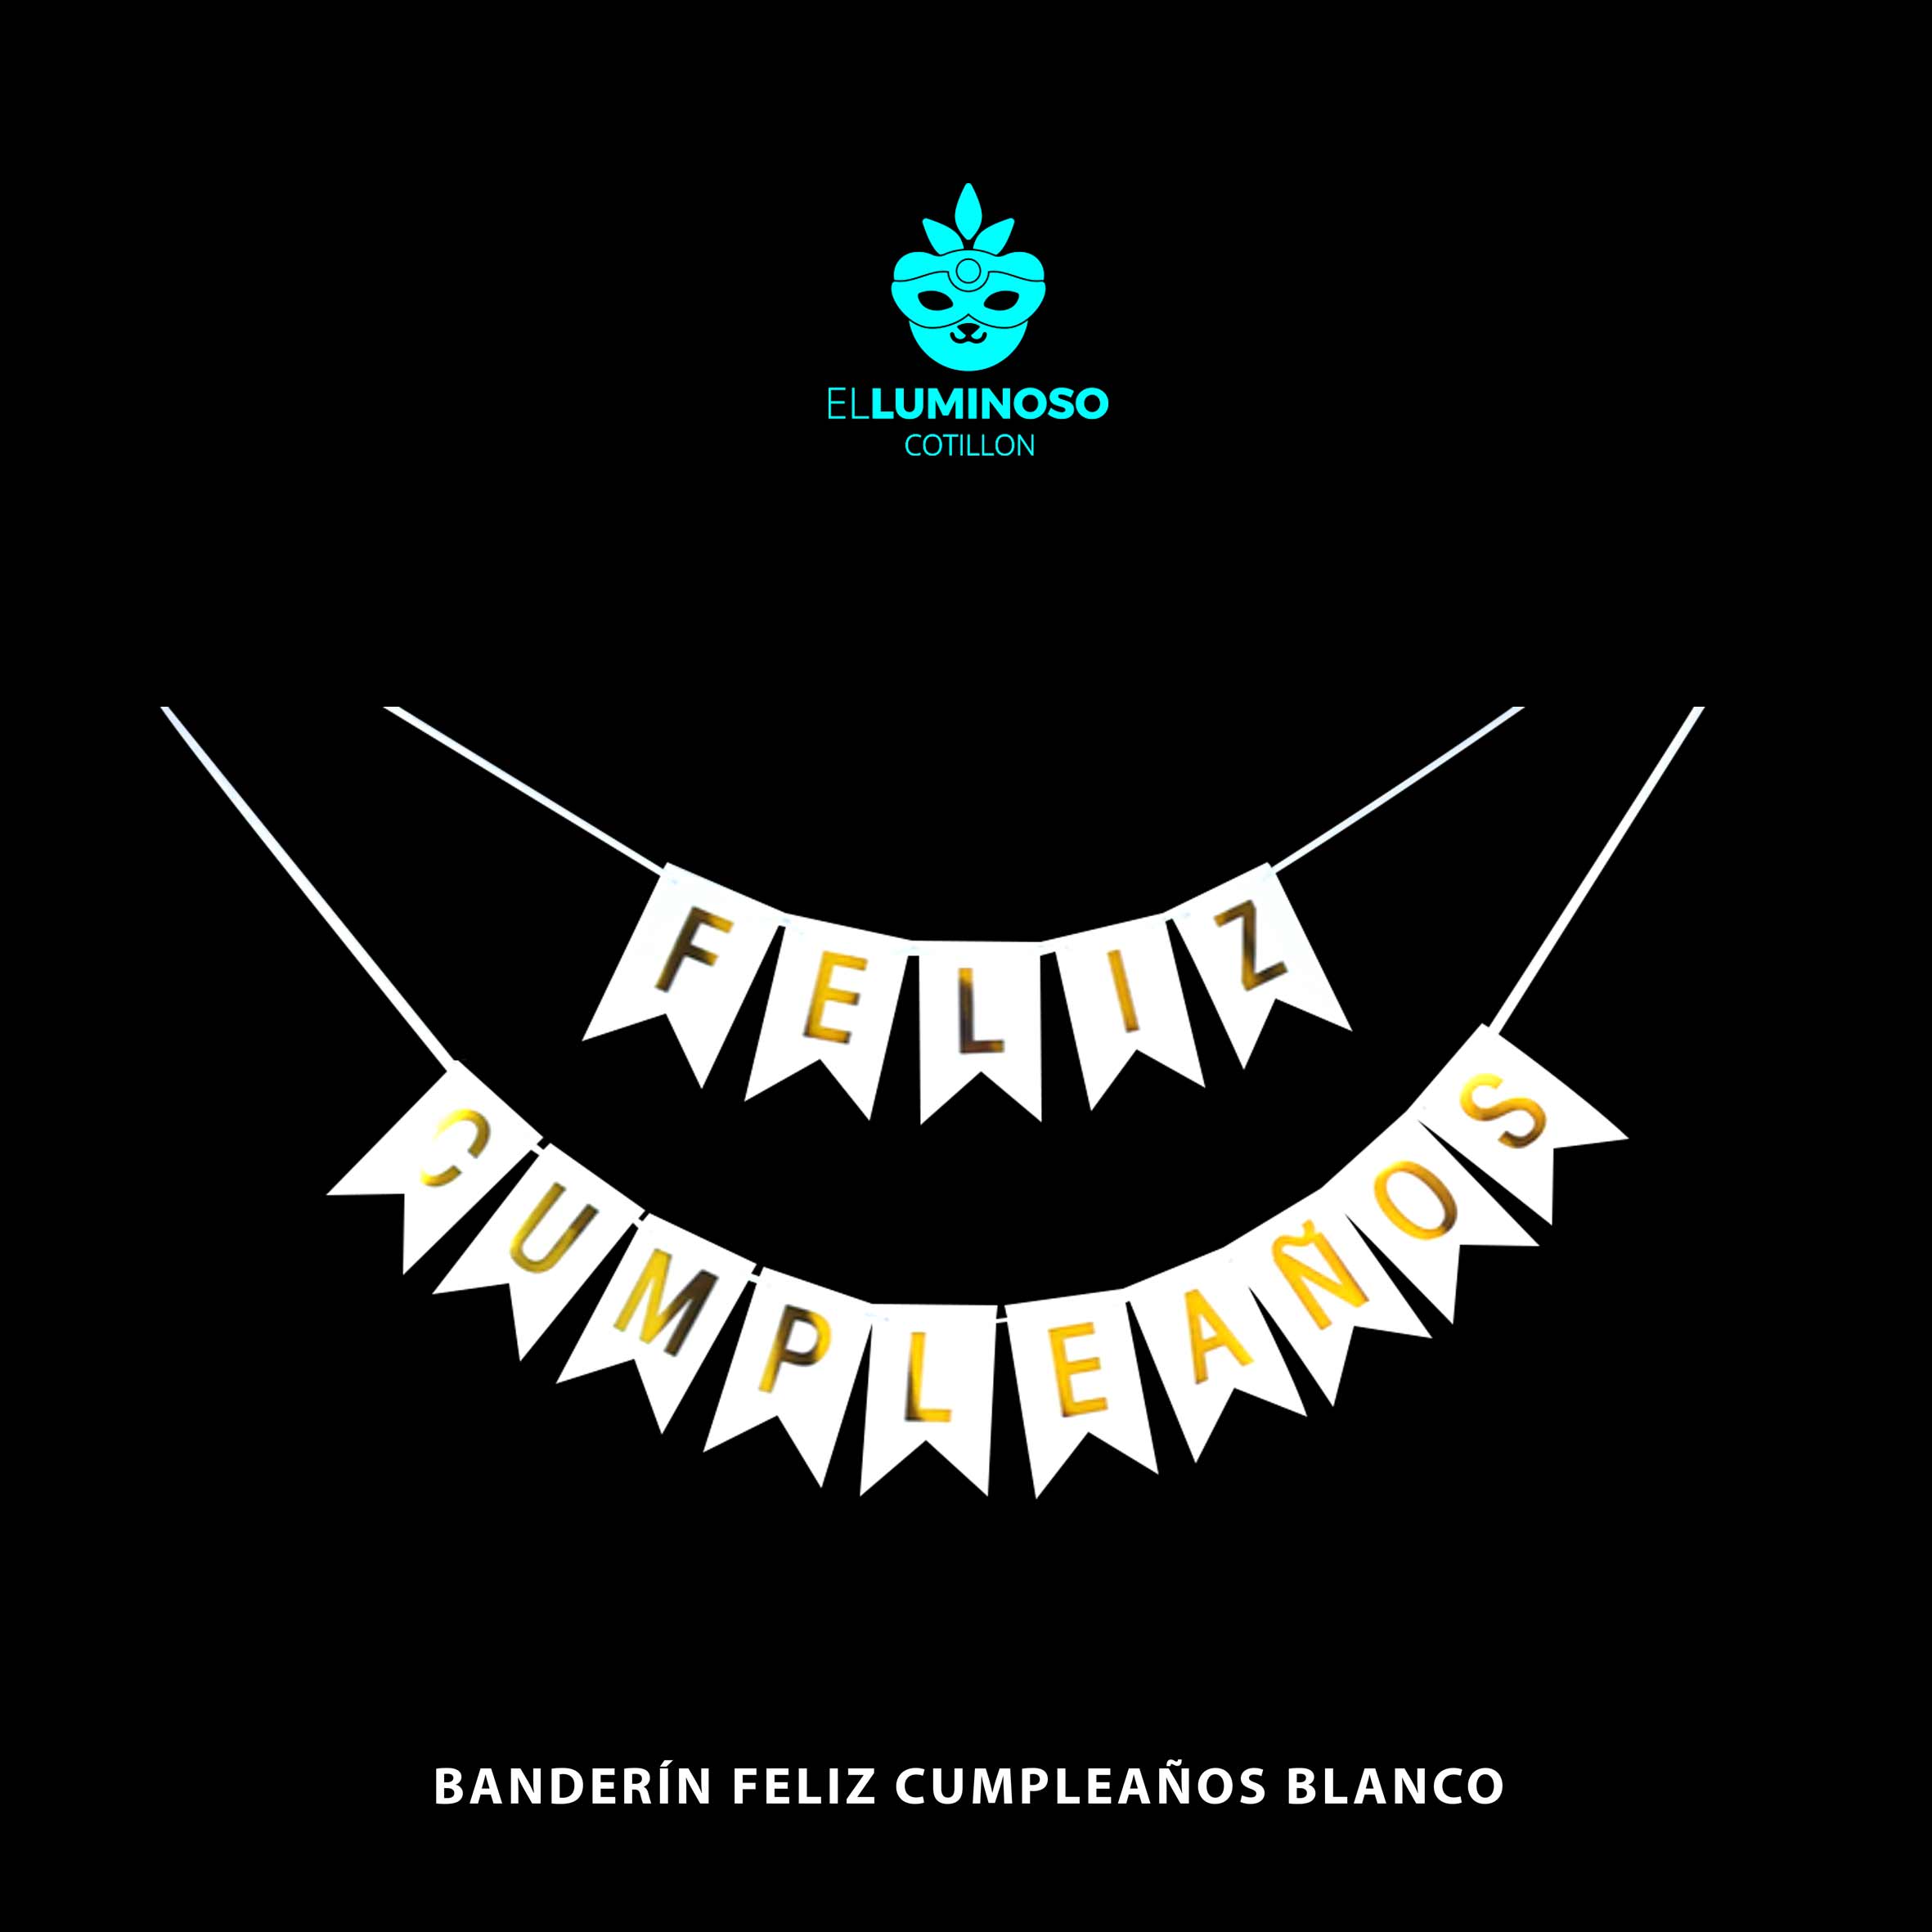 Banderin Cartel Feliz Cumpleaños Guirnalda Cotillon